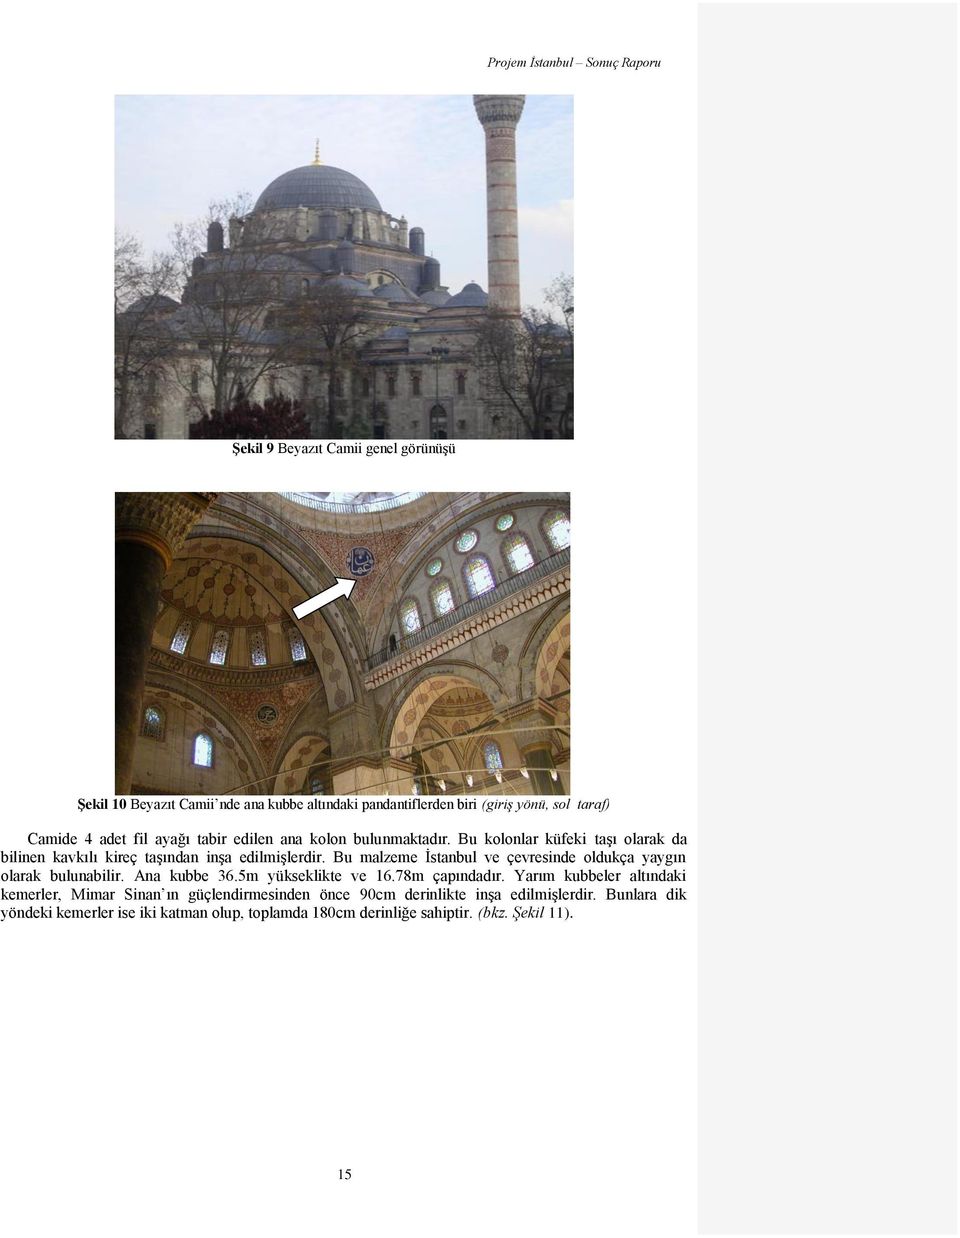 Bu malzeme İstanbul ve çevresinde oldukça yaygın olarak bulunabilir. Ana kubbe 36.5m yükseklikte ve 16.78m çapındadır.